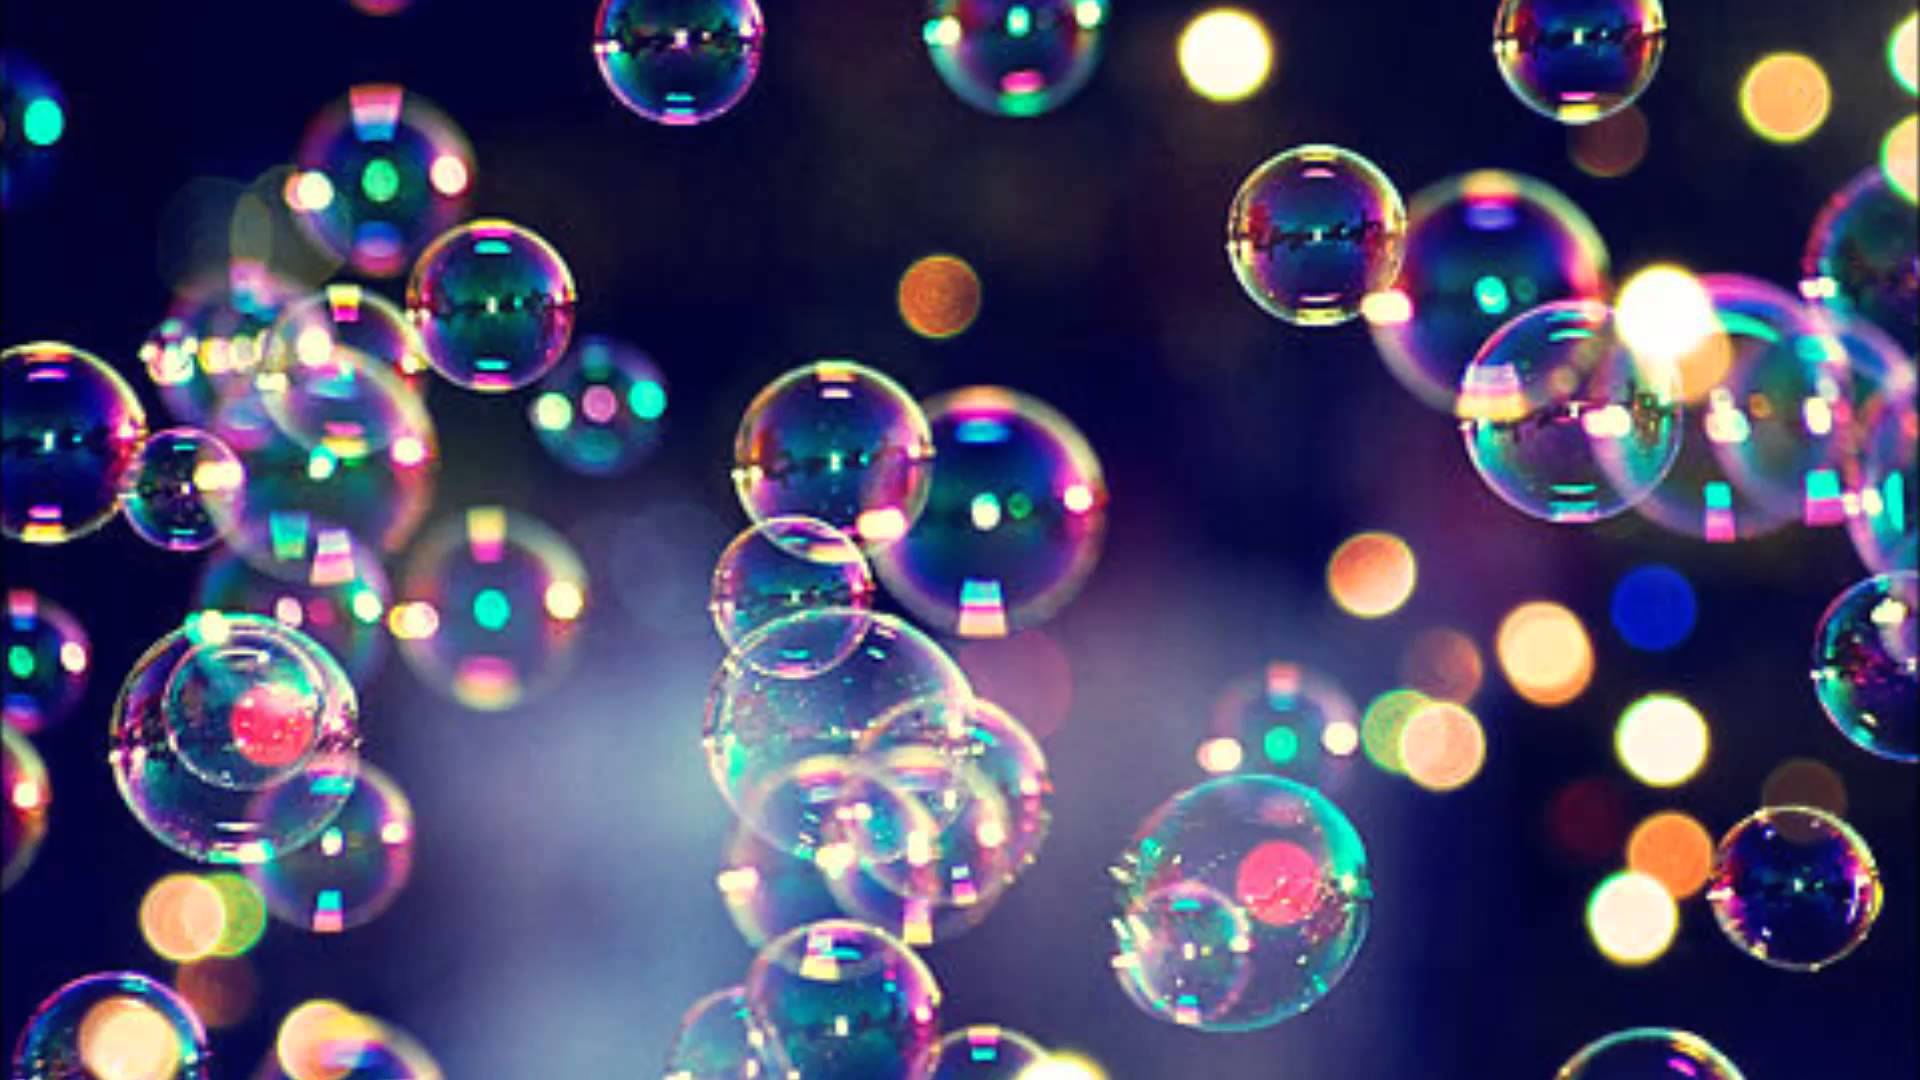 Захід з надування мильних бульбашок “БулькФест” відбудеться 17 березня на перехресті вулиць Корзо та Волошина.